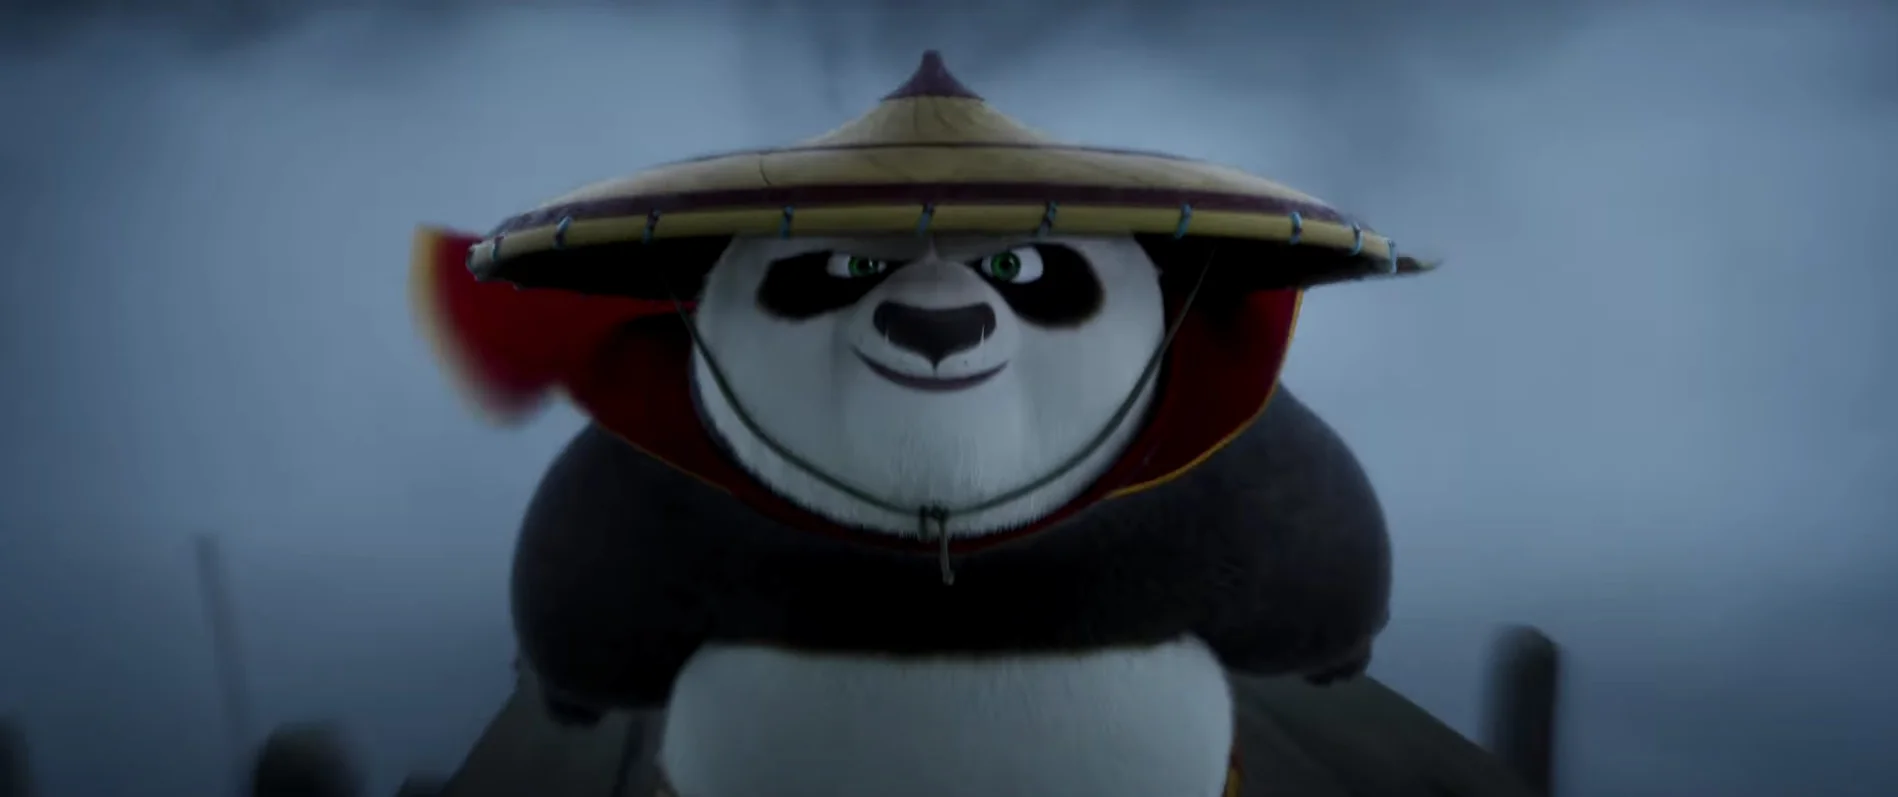 Кунг-фу Панда 4 () мультфильм смотреть онлайн бесплатно в хорошем качестве HD